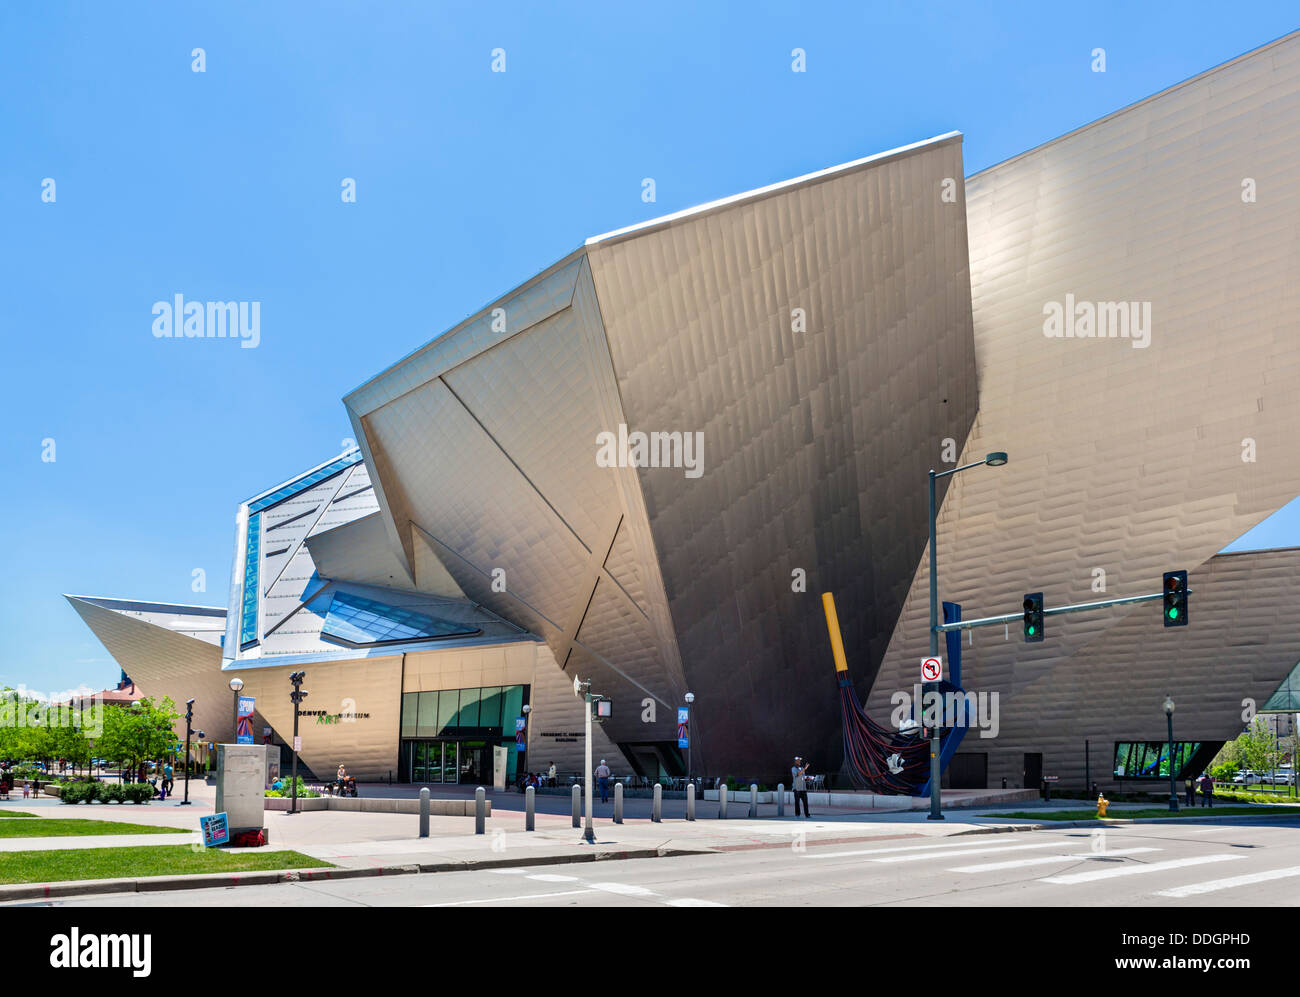 The Frederic C Hamilton Building at the Denver Art Museum, Denver, Colorado, USA Stock Photo